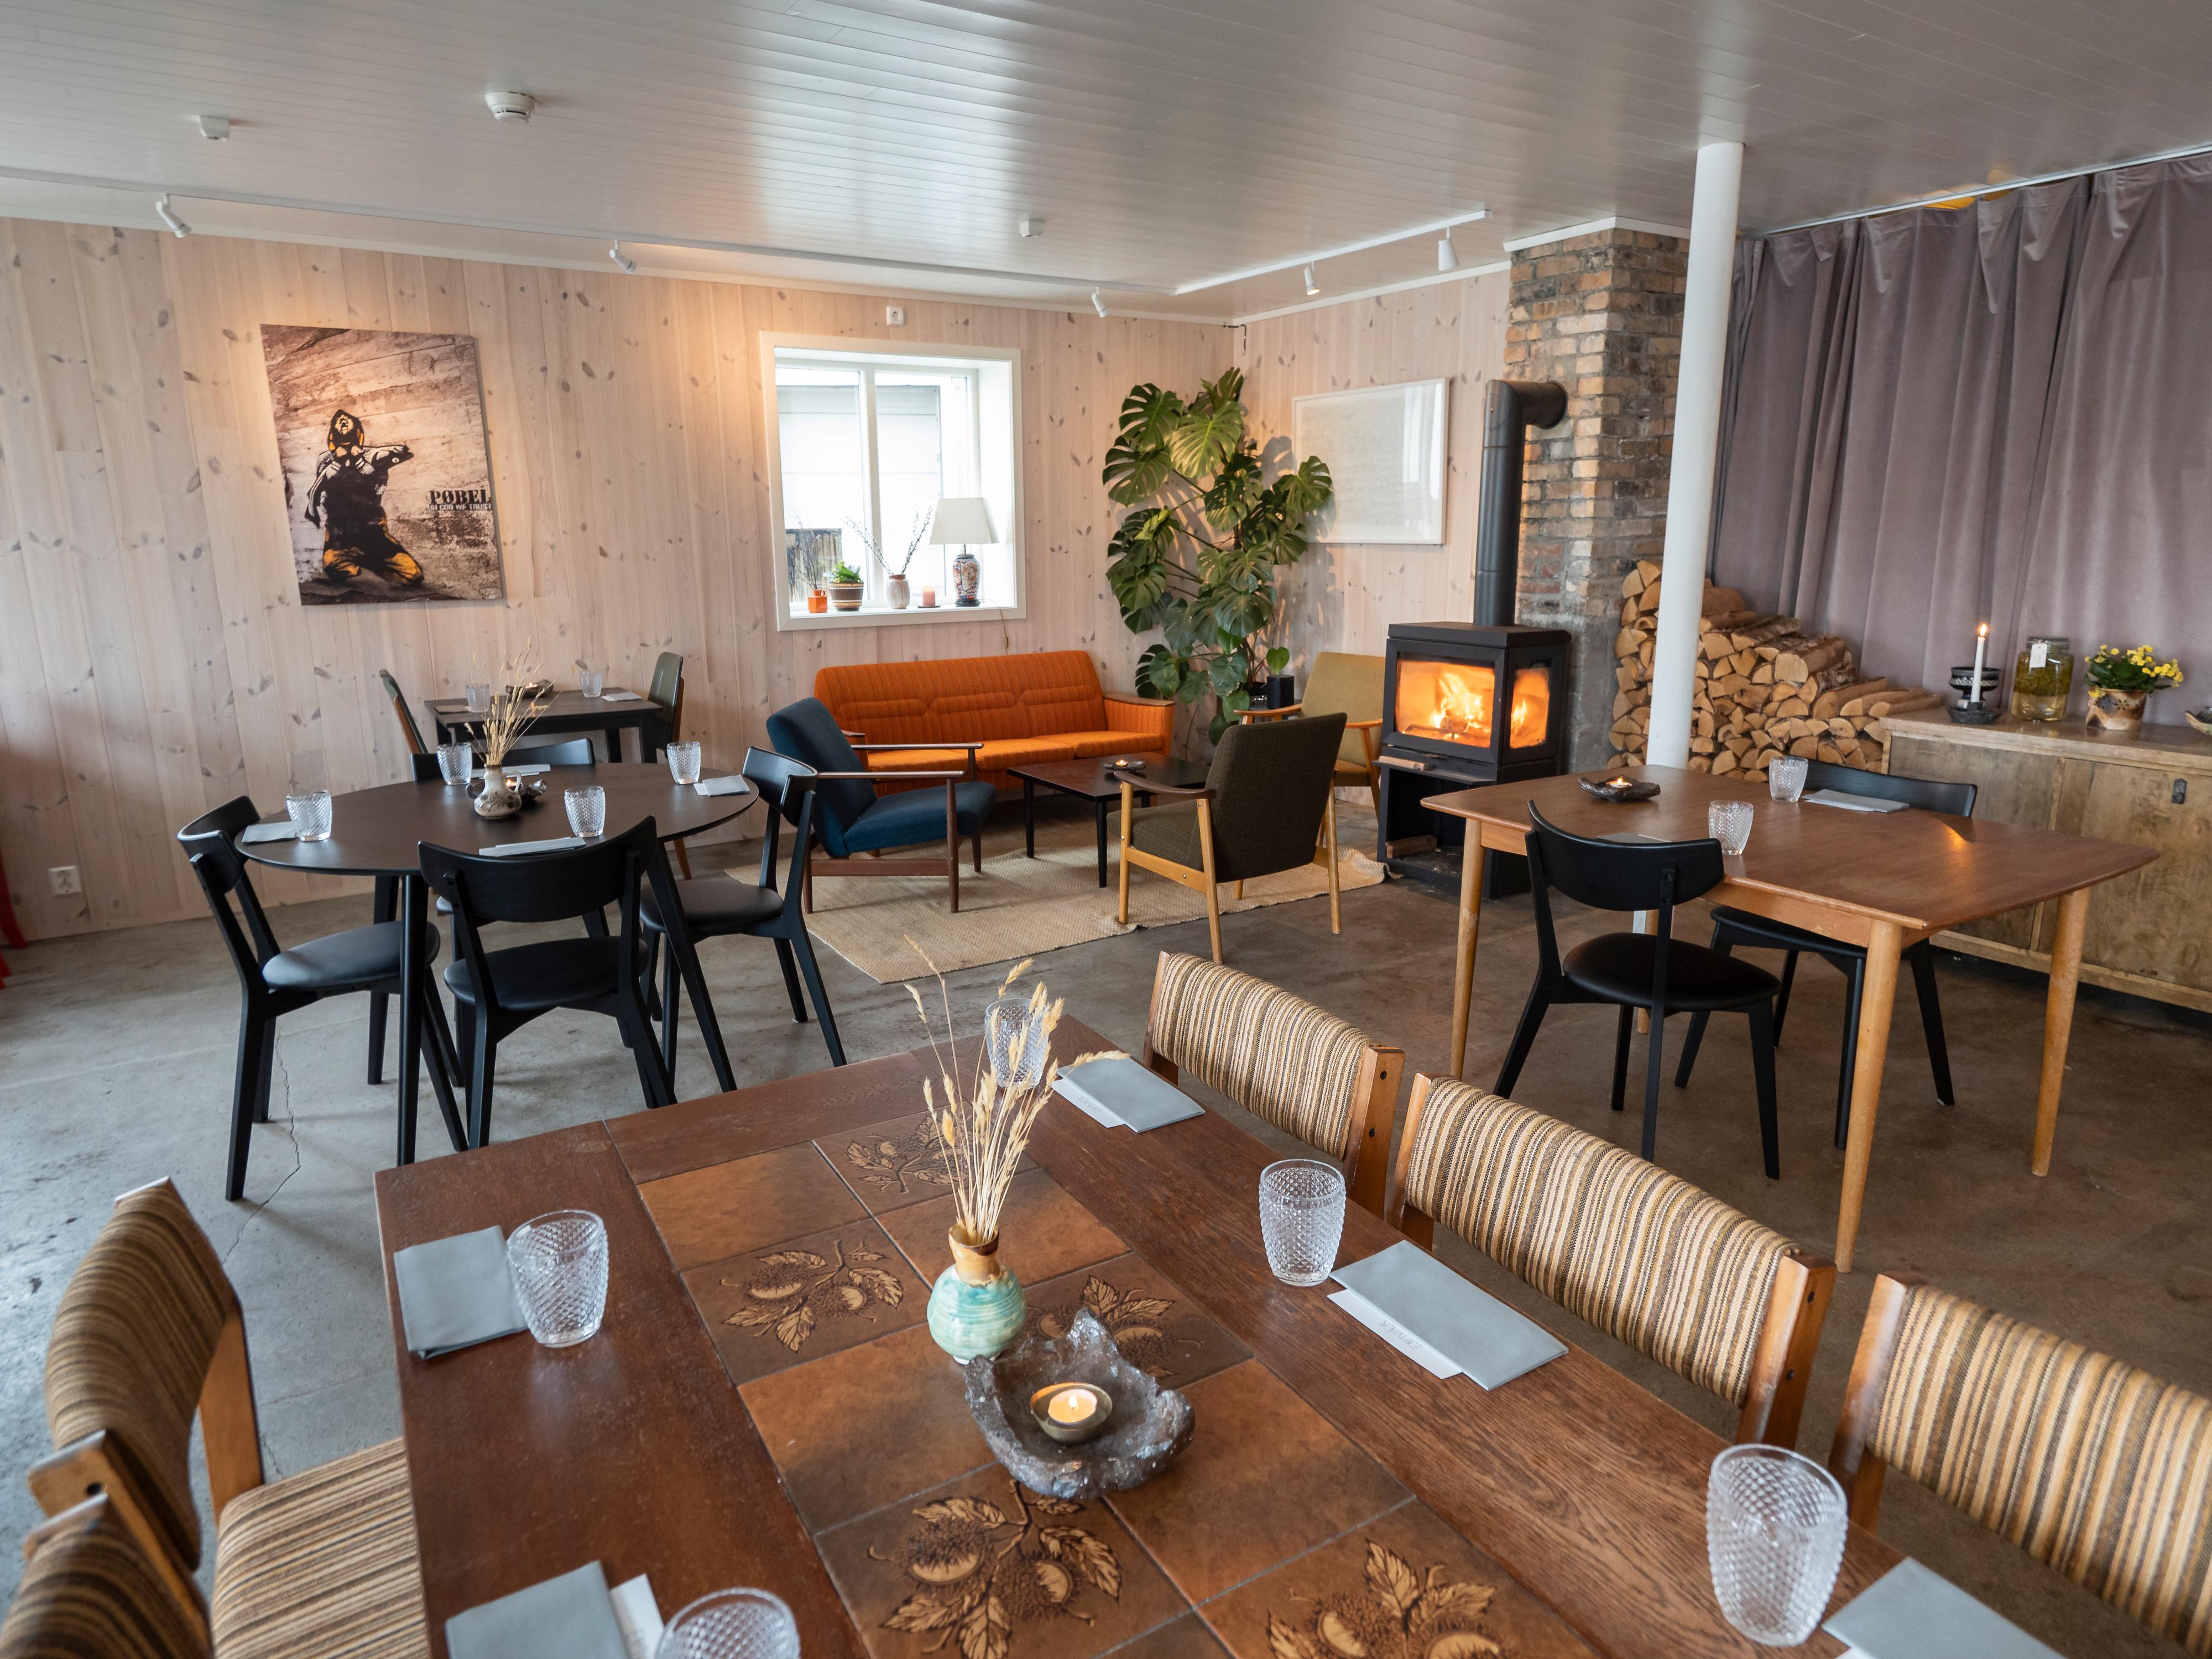 Restaurantanmeldelse av Einvær: Skinner på brygga i Henningsvær